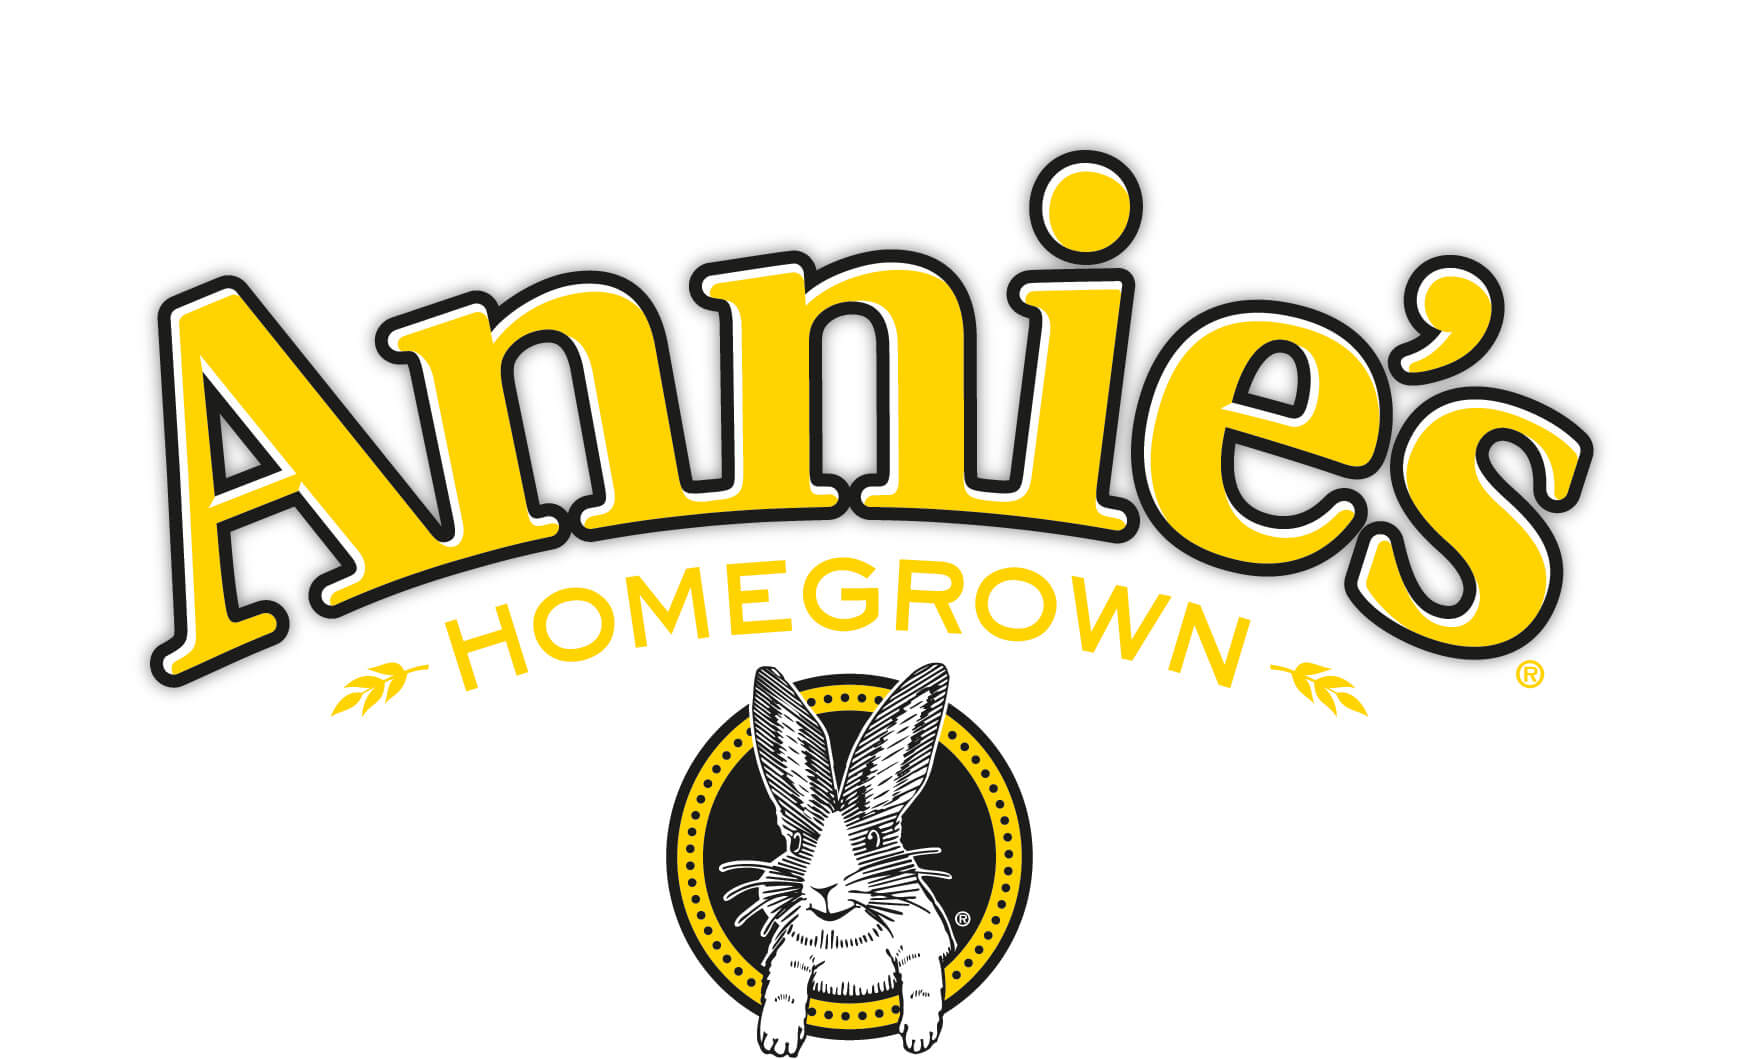 Annies Homegrown